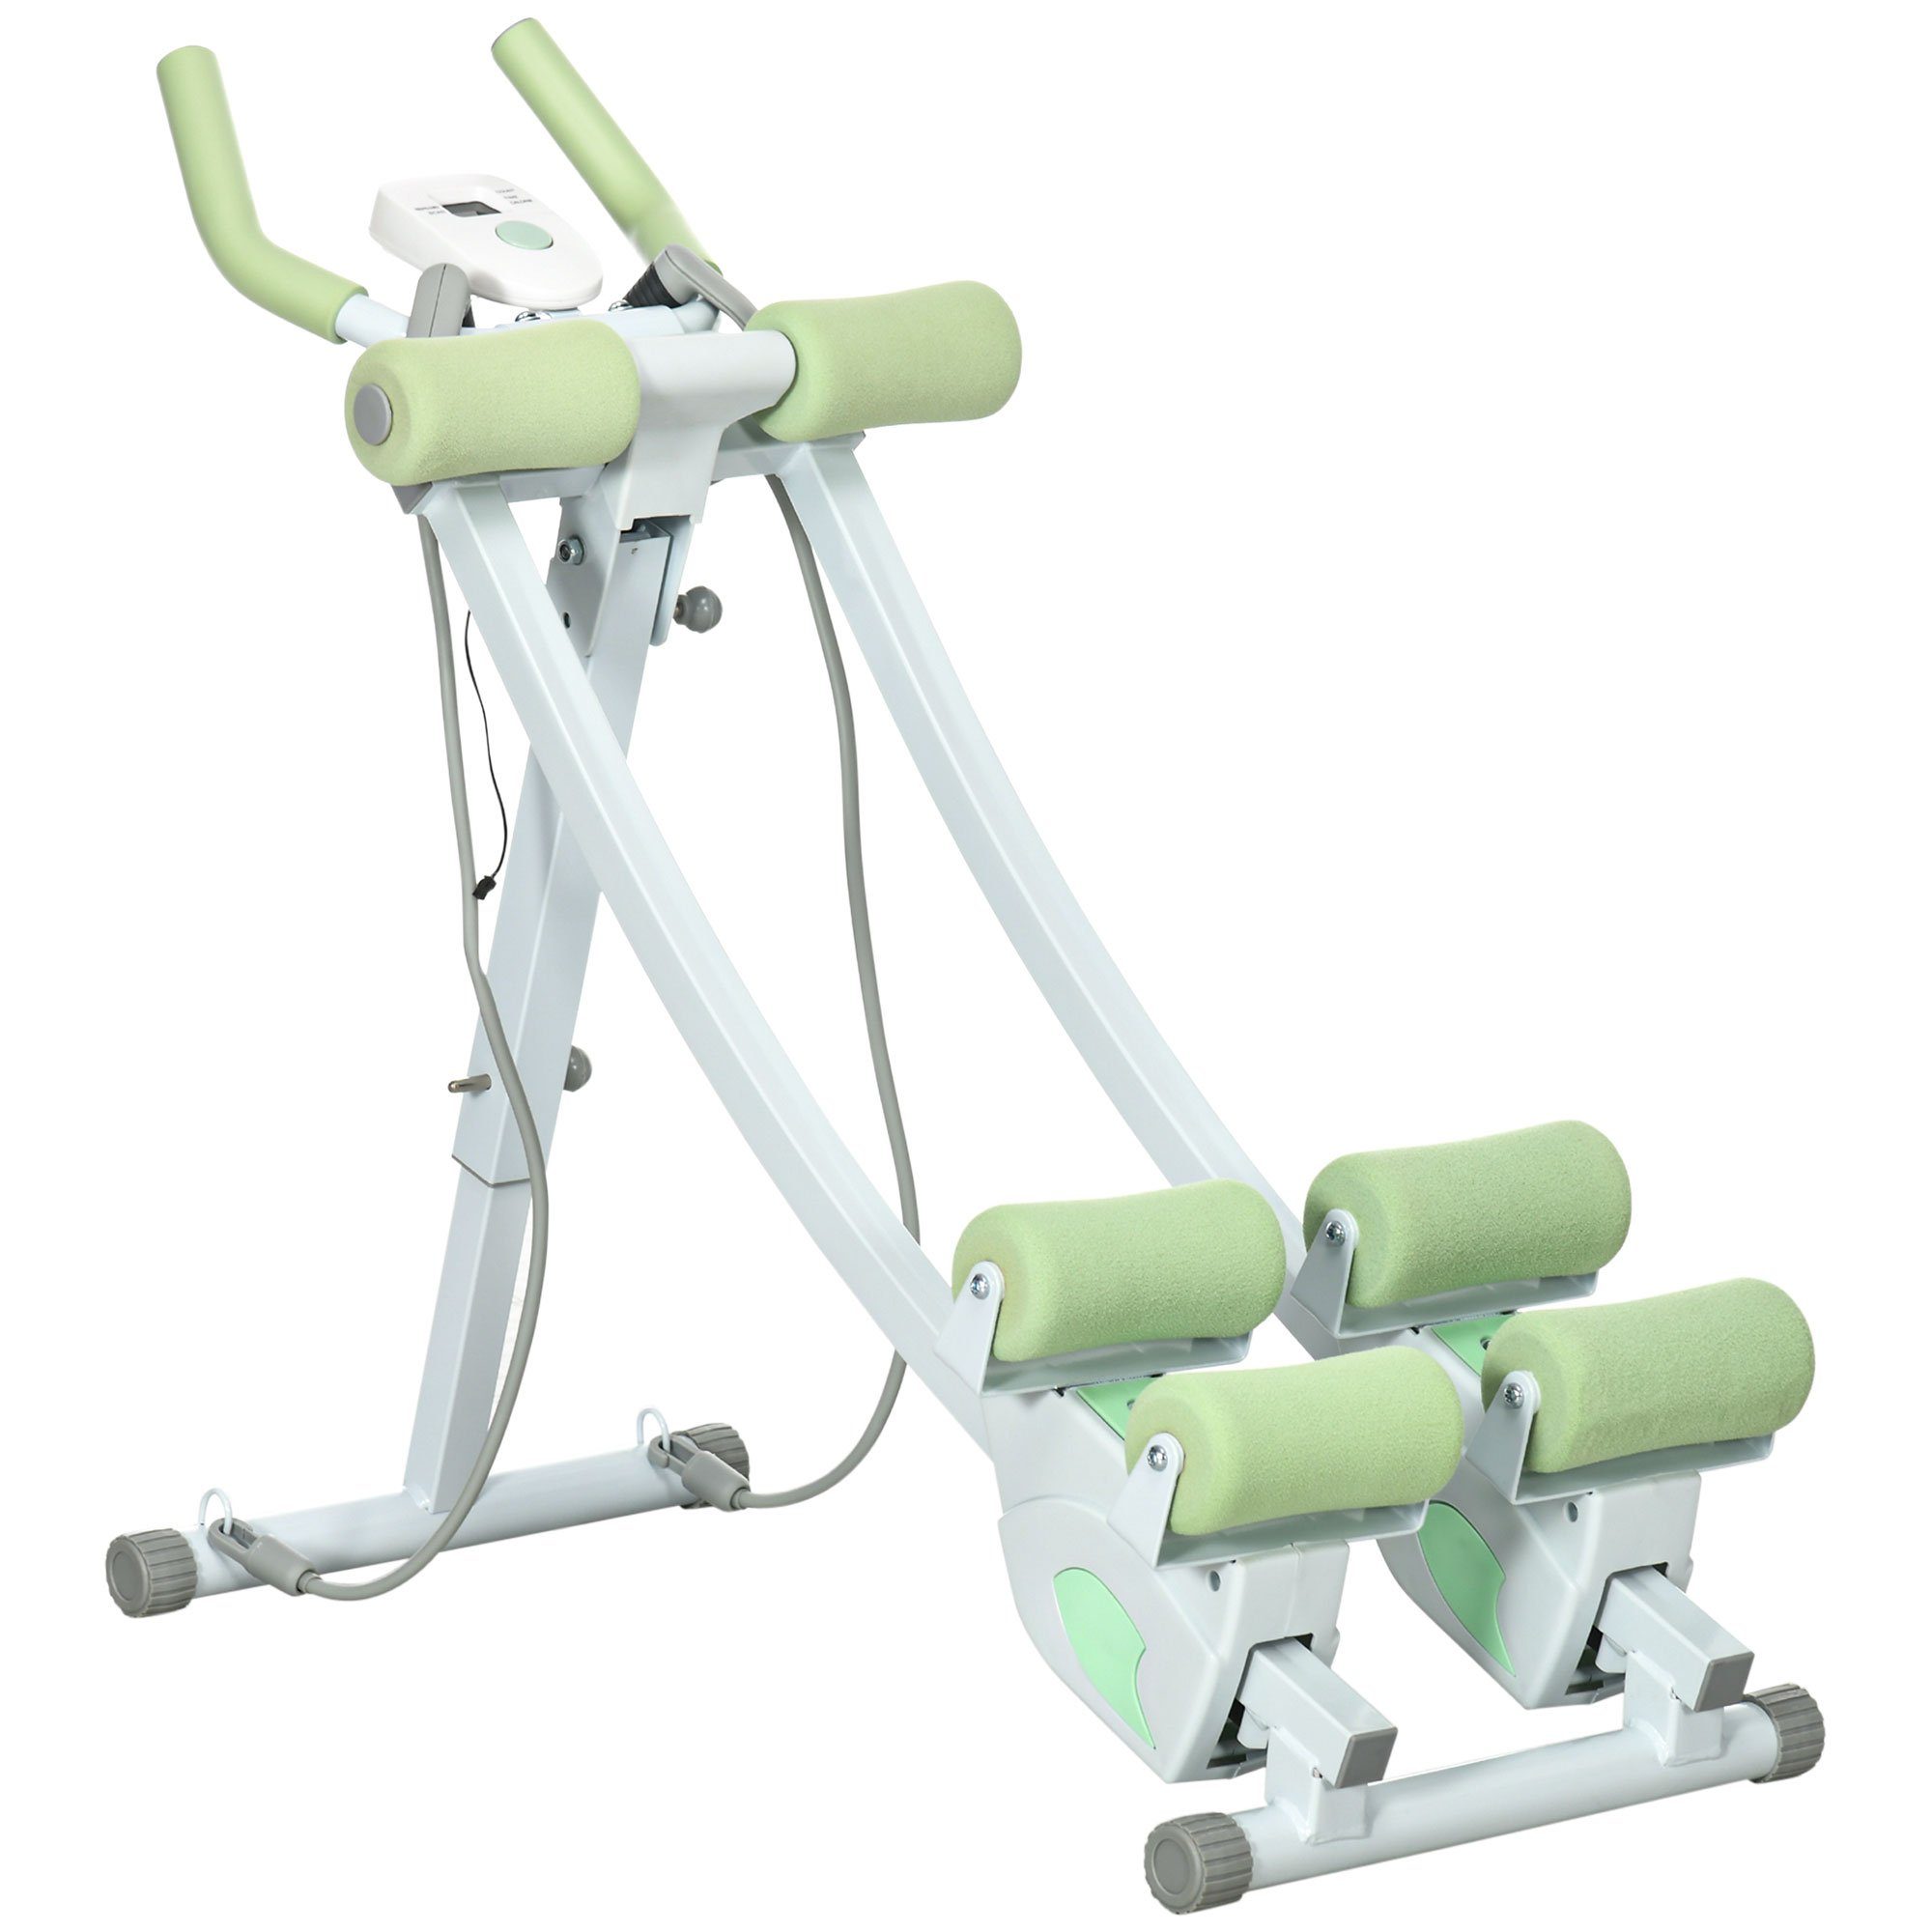 SPORTNOW Bauchtrainer Bauchmuskeltrainer mit LCD-Anzeige, Stahl, Weiß+Grün (Belastbar bis zu 150kg, 1-St., Höhenverstellbarer Trainer), 99L x 40B x 90H cm (max. Winkel)